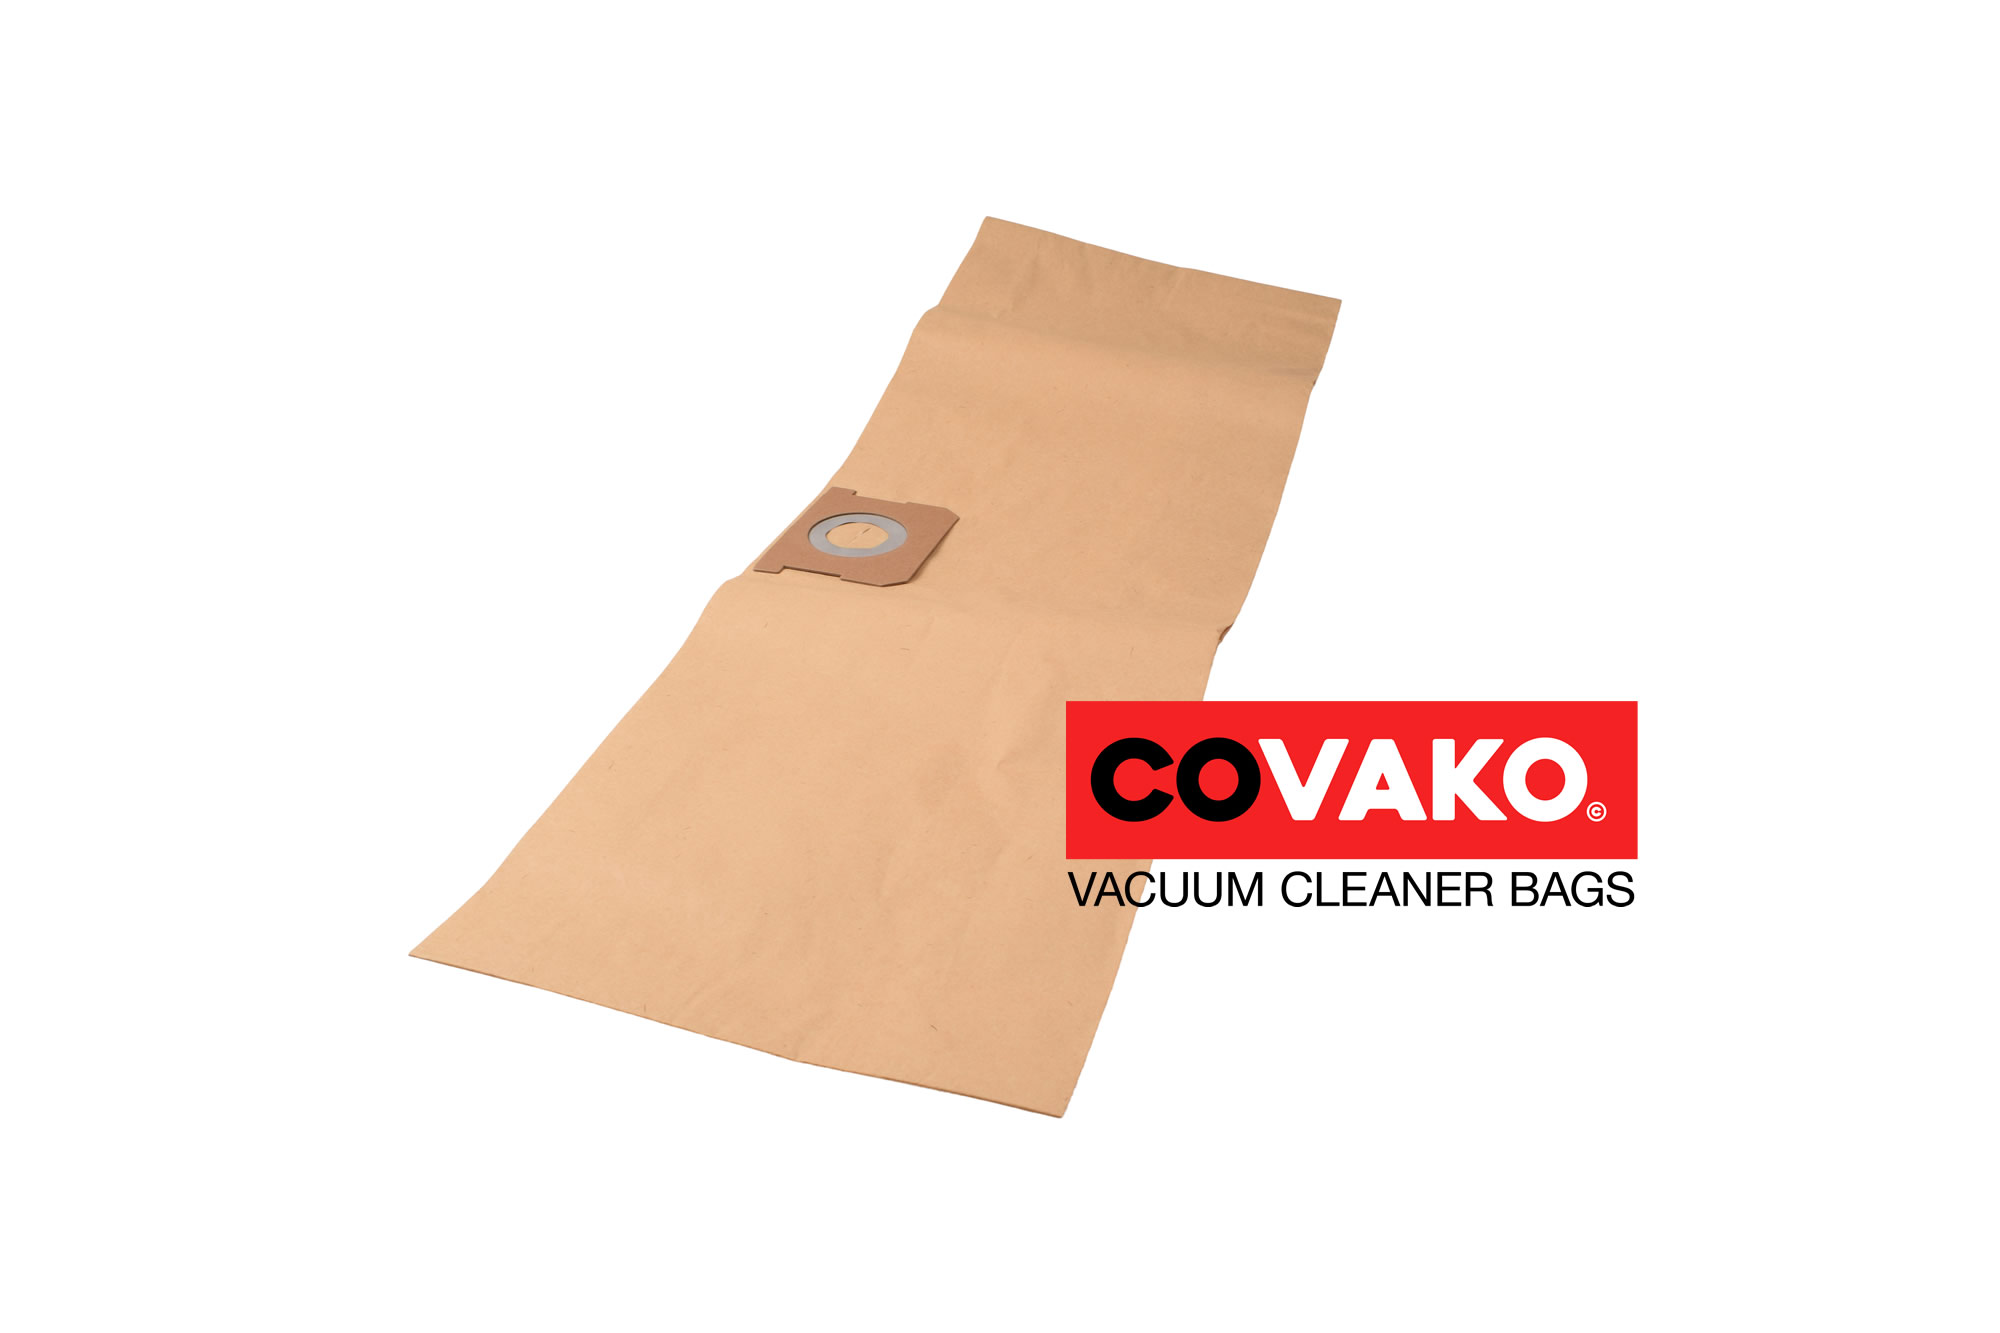 Obi Shop Vac Blower Vac 25 / Paper - Obi vacuum cleaner bags